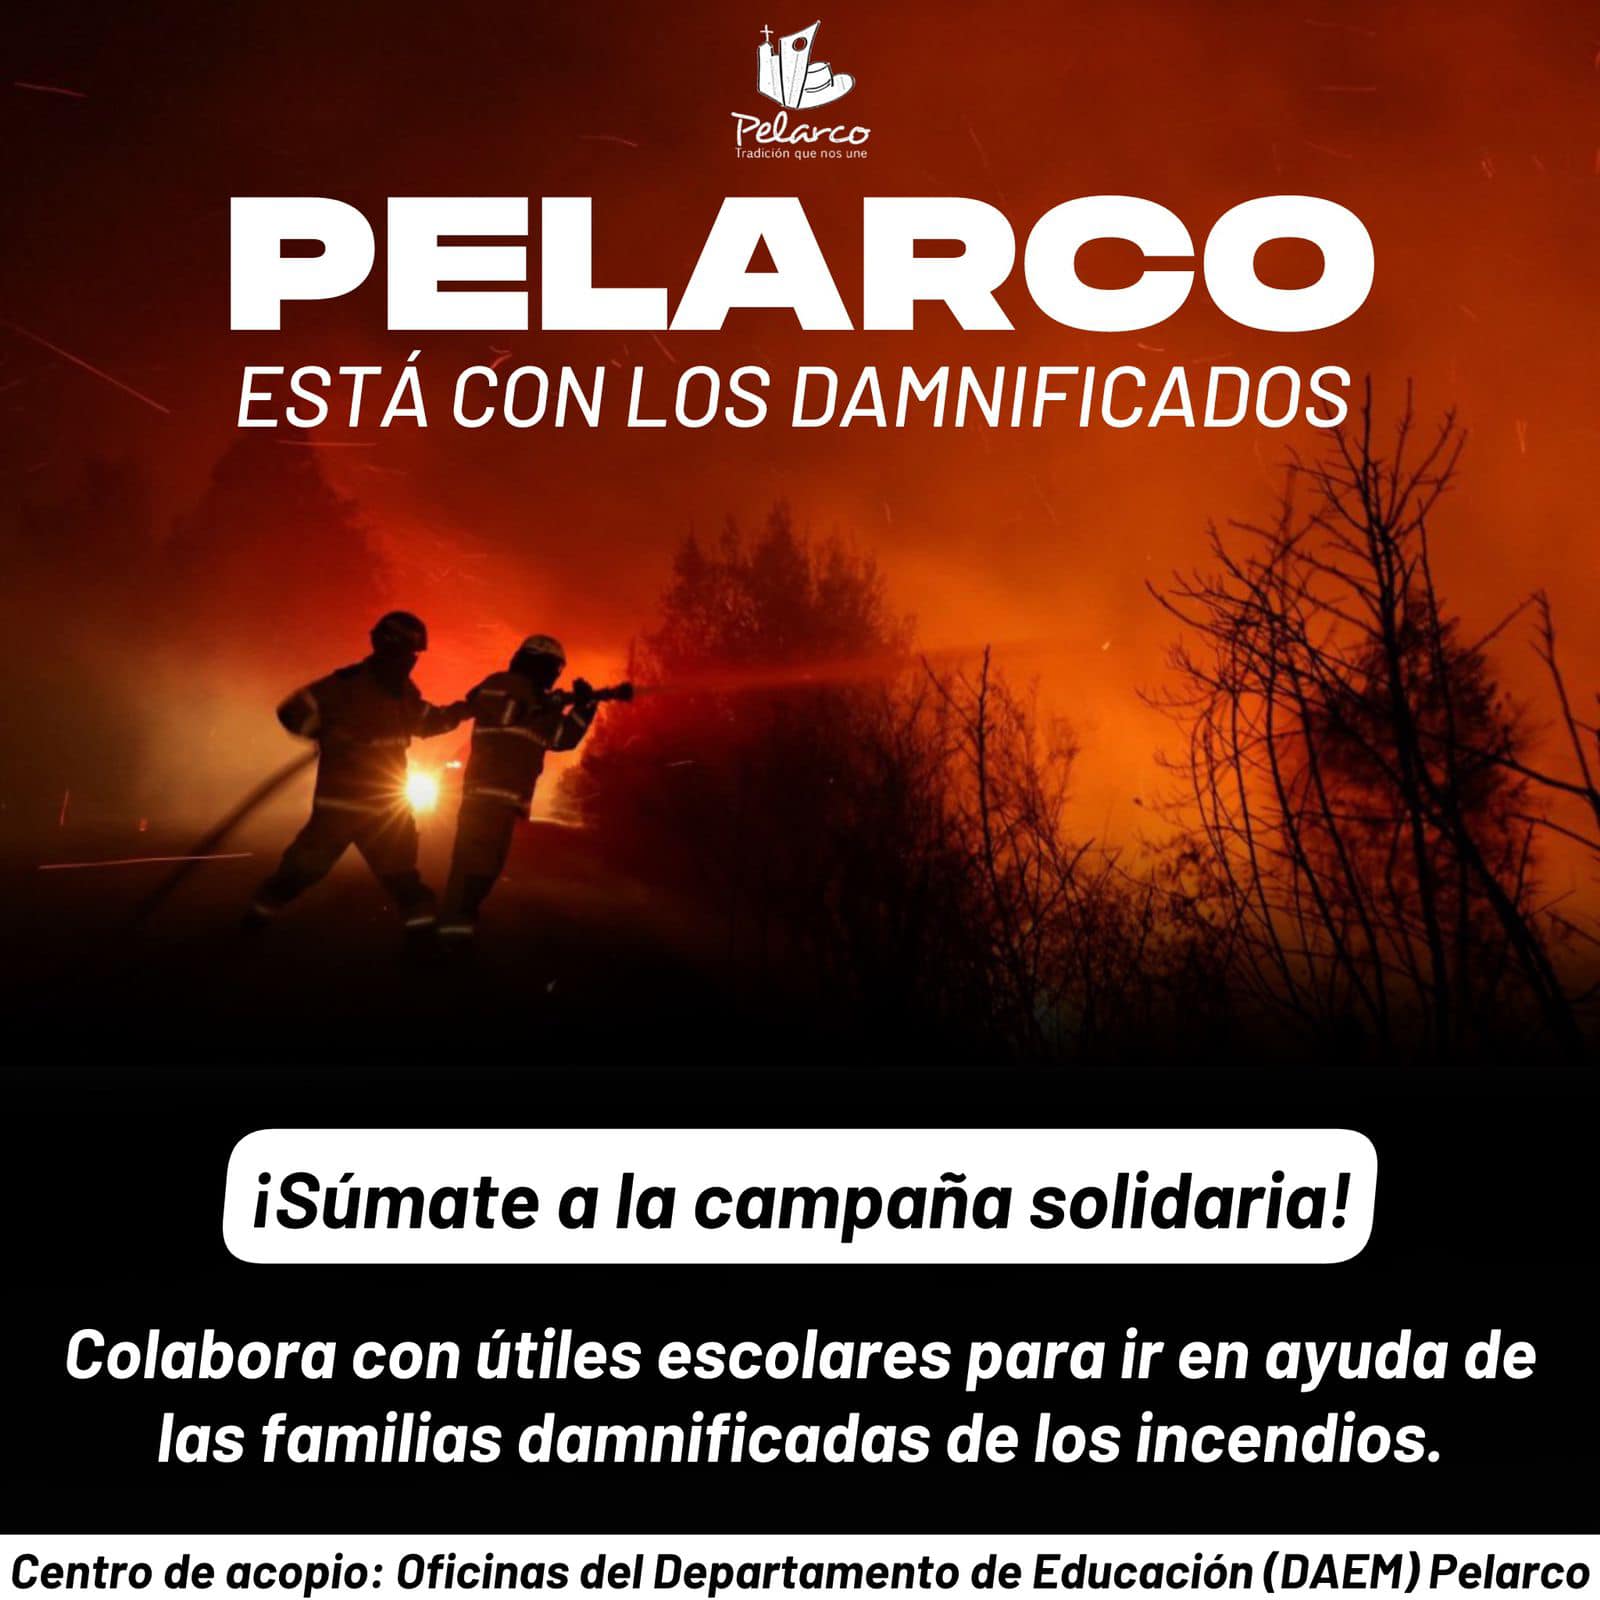 Pelarco realizará colecta de útiles escolares para familias de la Región de Valparaíso